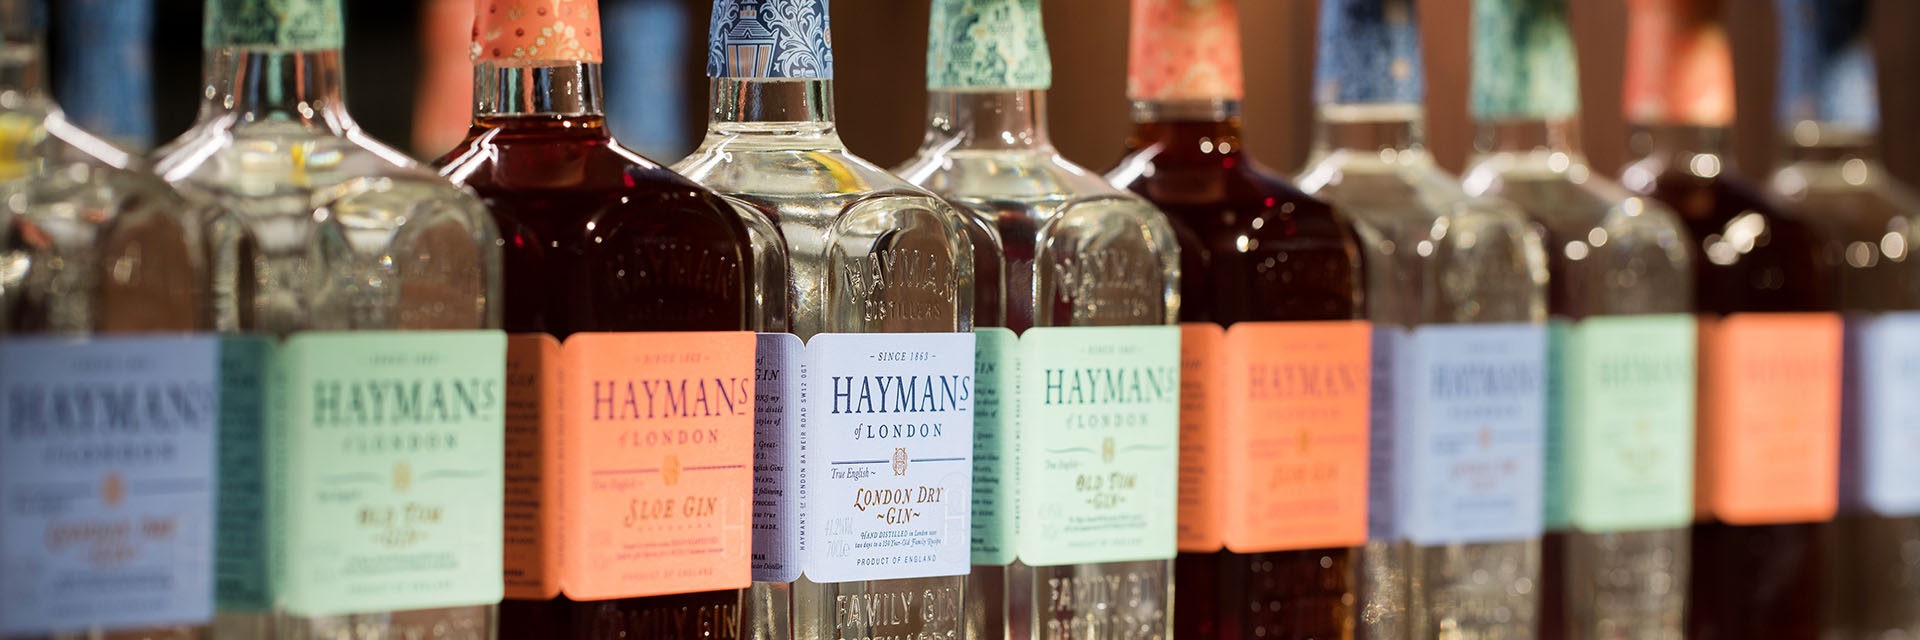 Hayman's of London - Englischer Gin mit über 150 Jahren Tradition